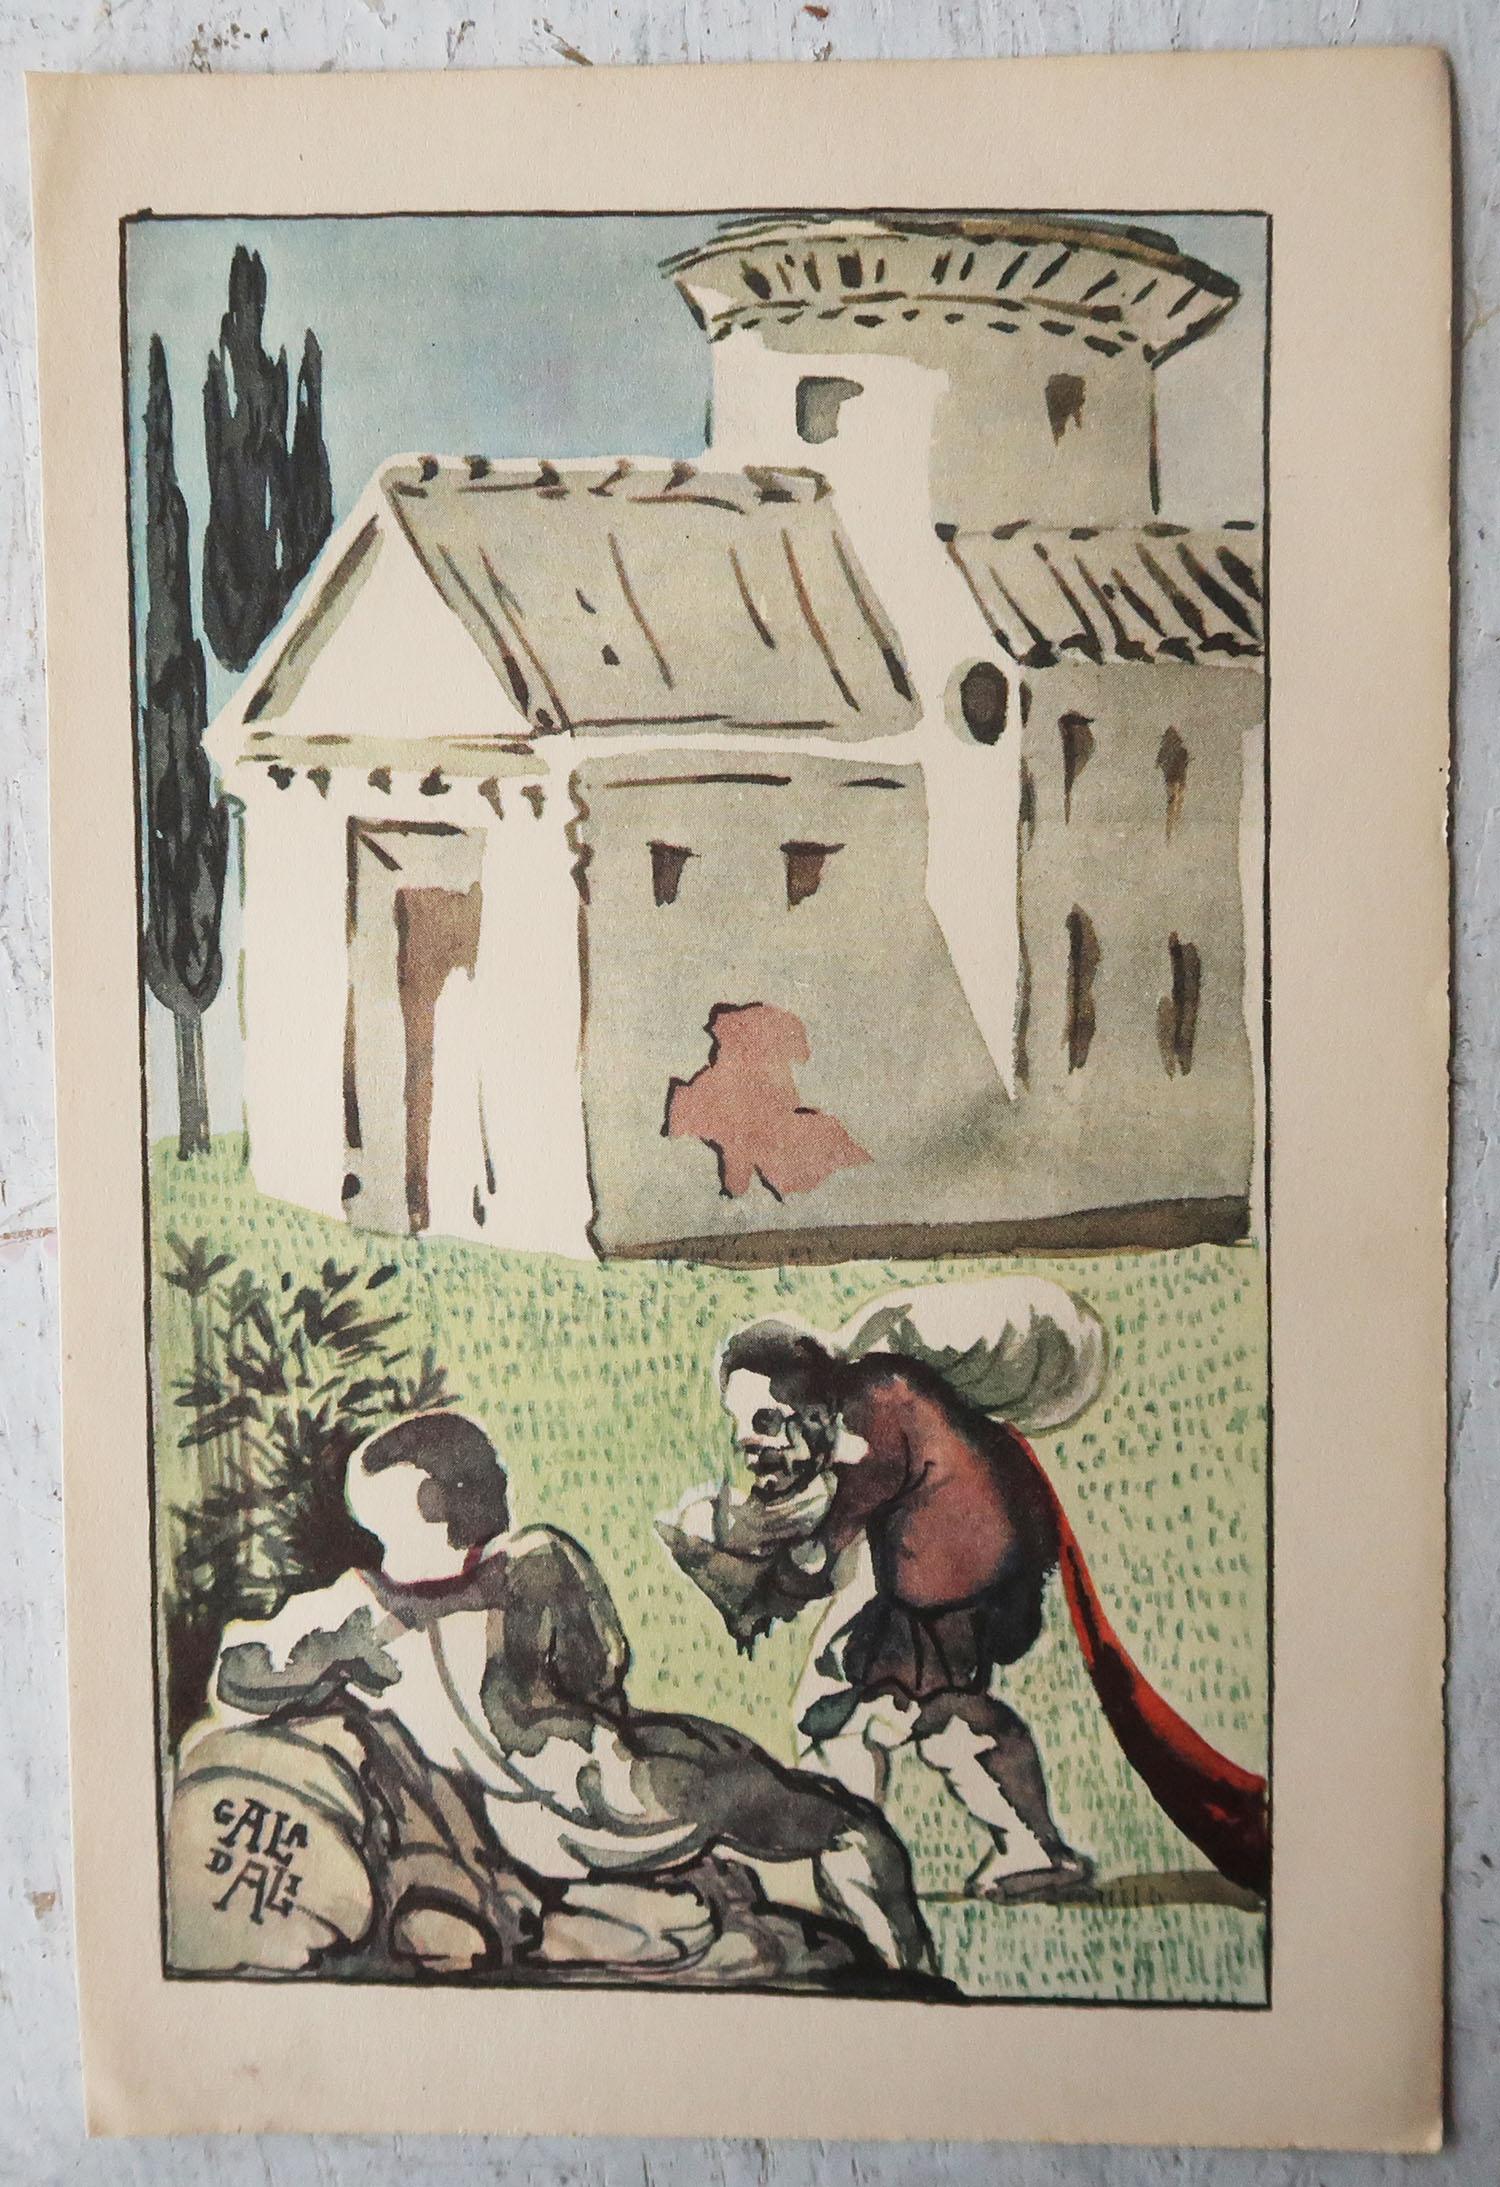 American Original Vintage Print by Salvador Dali, 1947